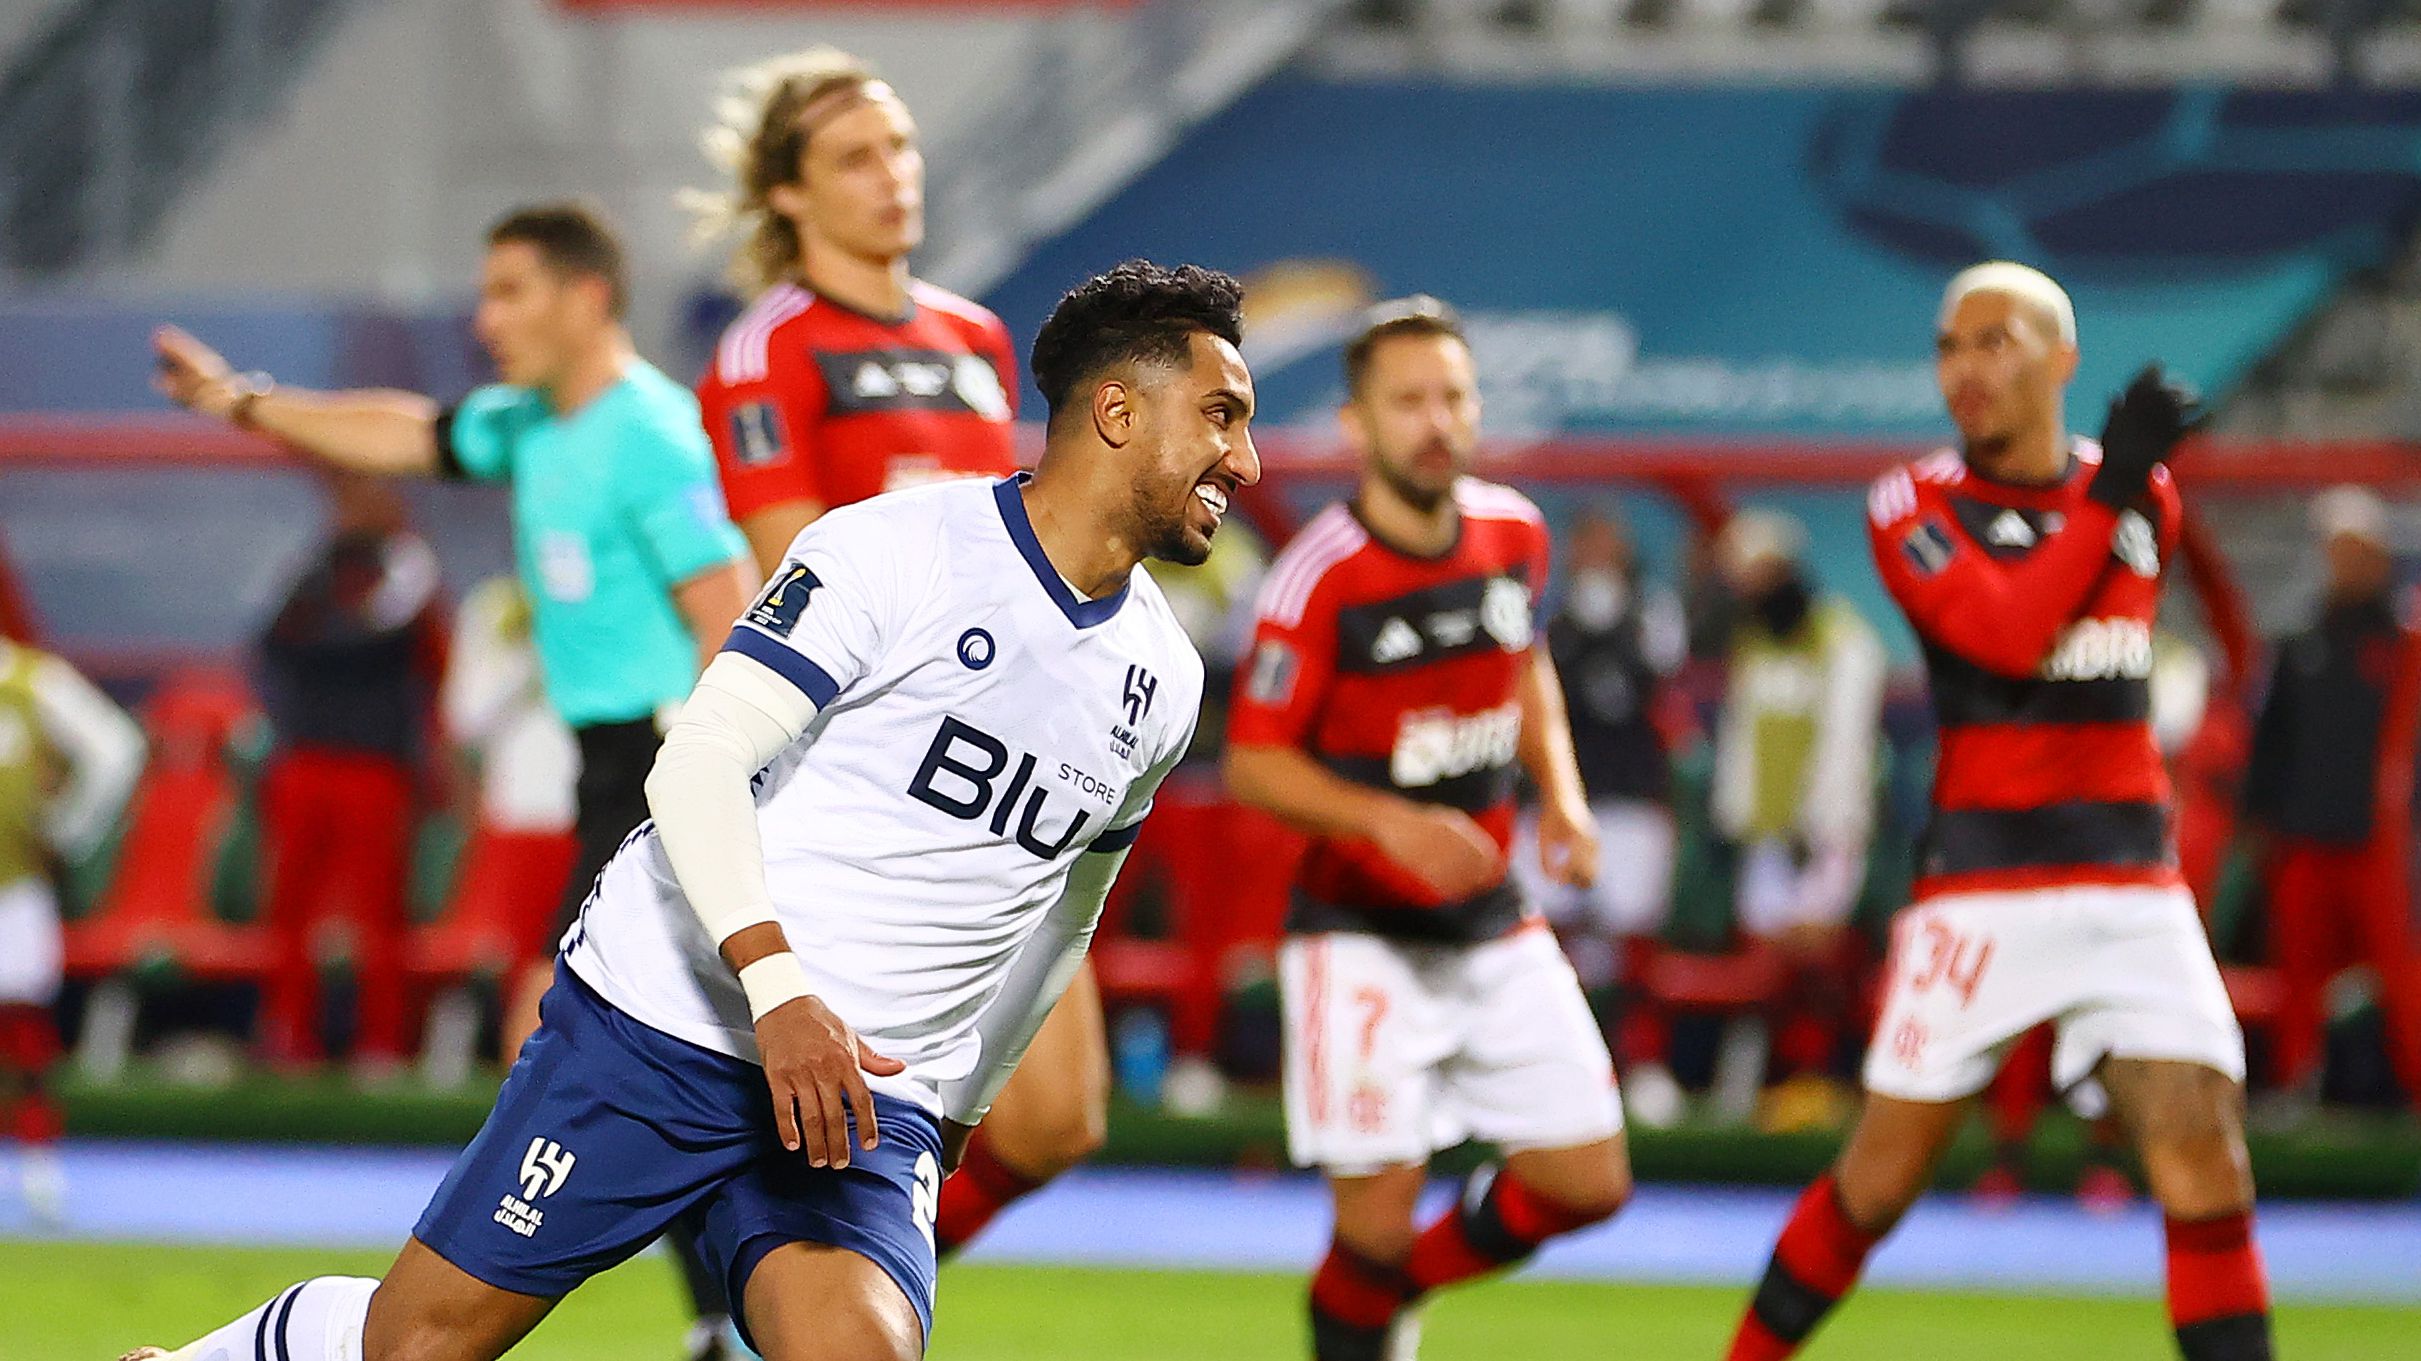 Momento do segundo gol marcado pelo Al-Hilal contra o Flamengo (Crédito: Getty Images)